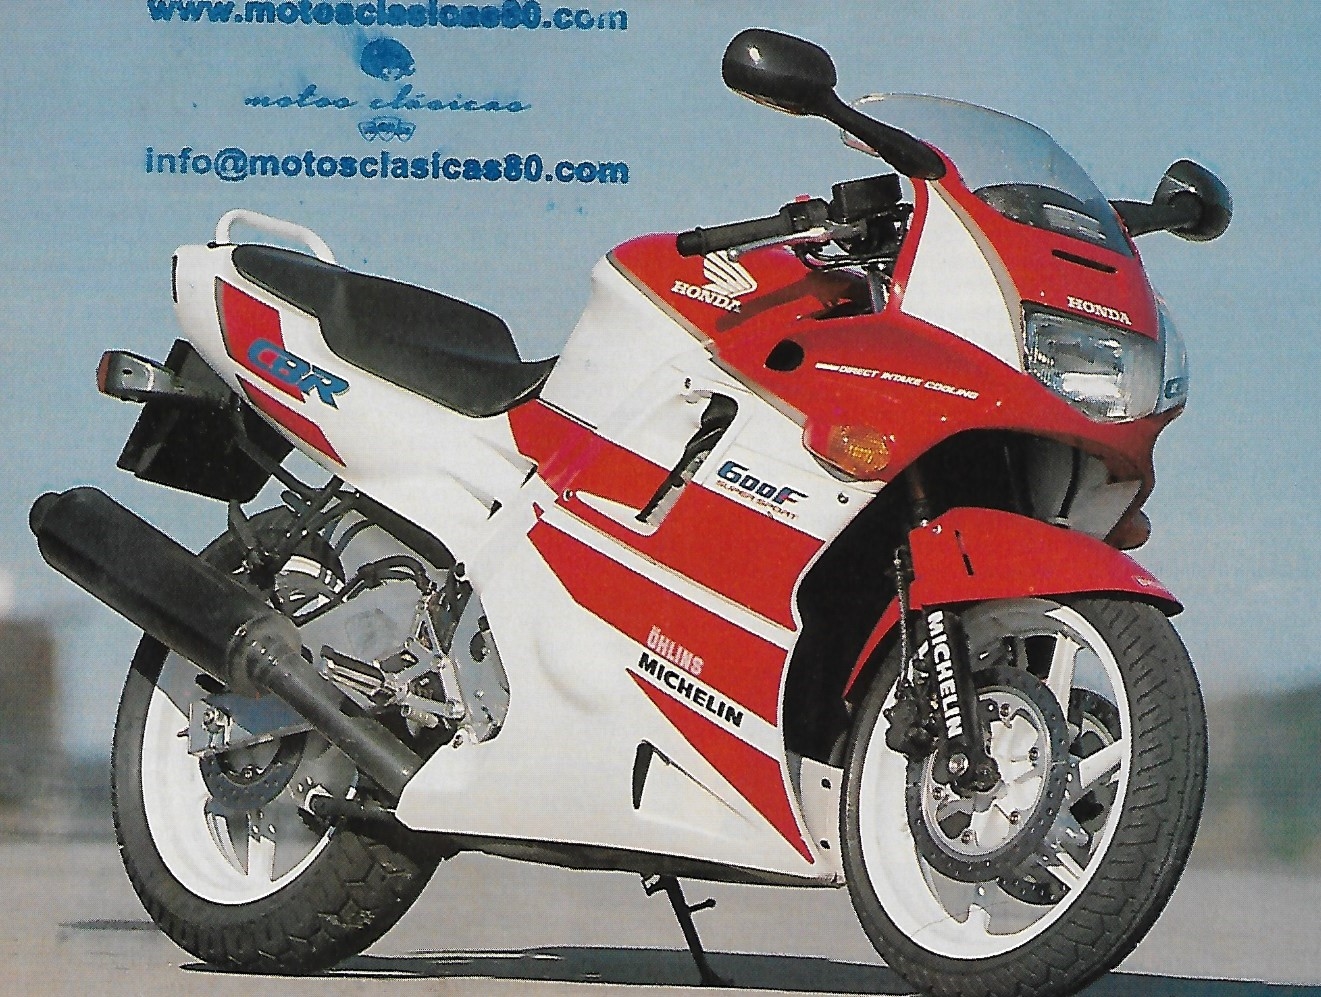 Honda CBR600F2